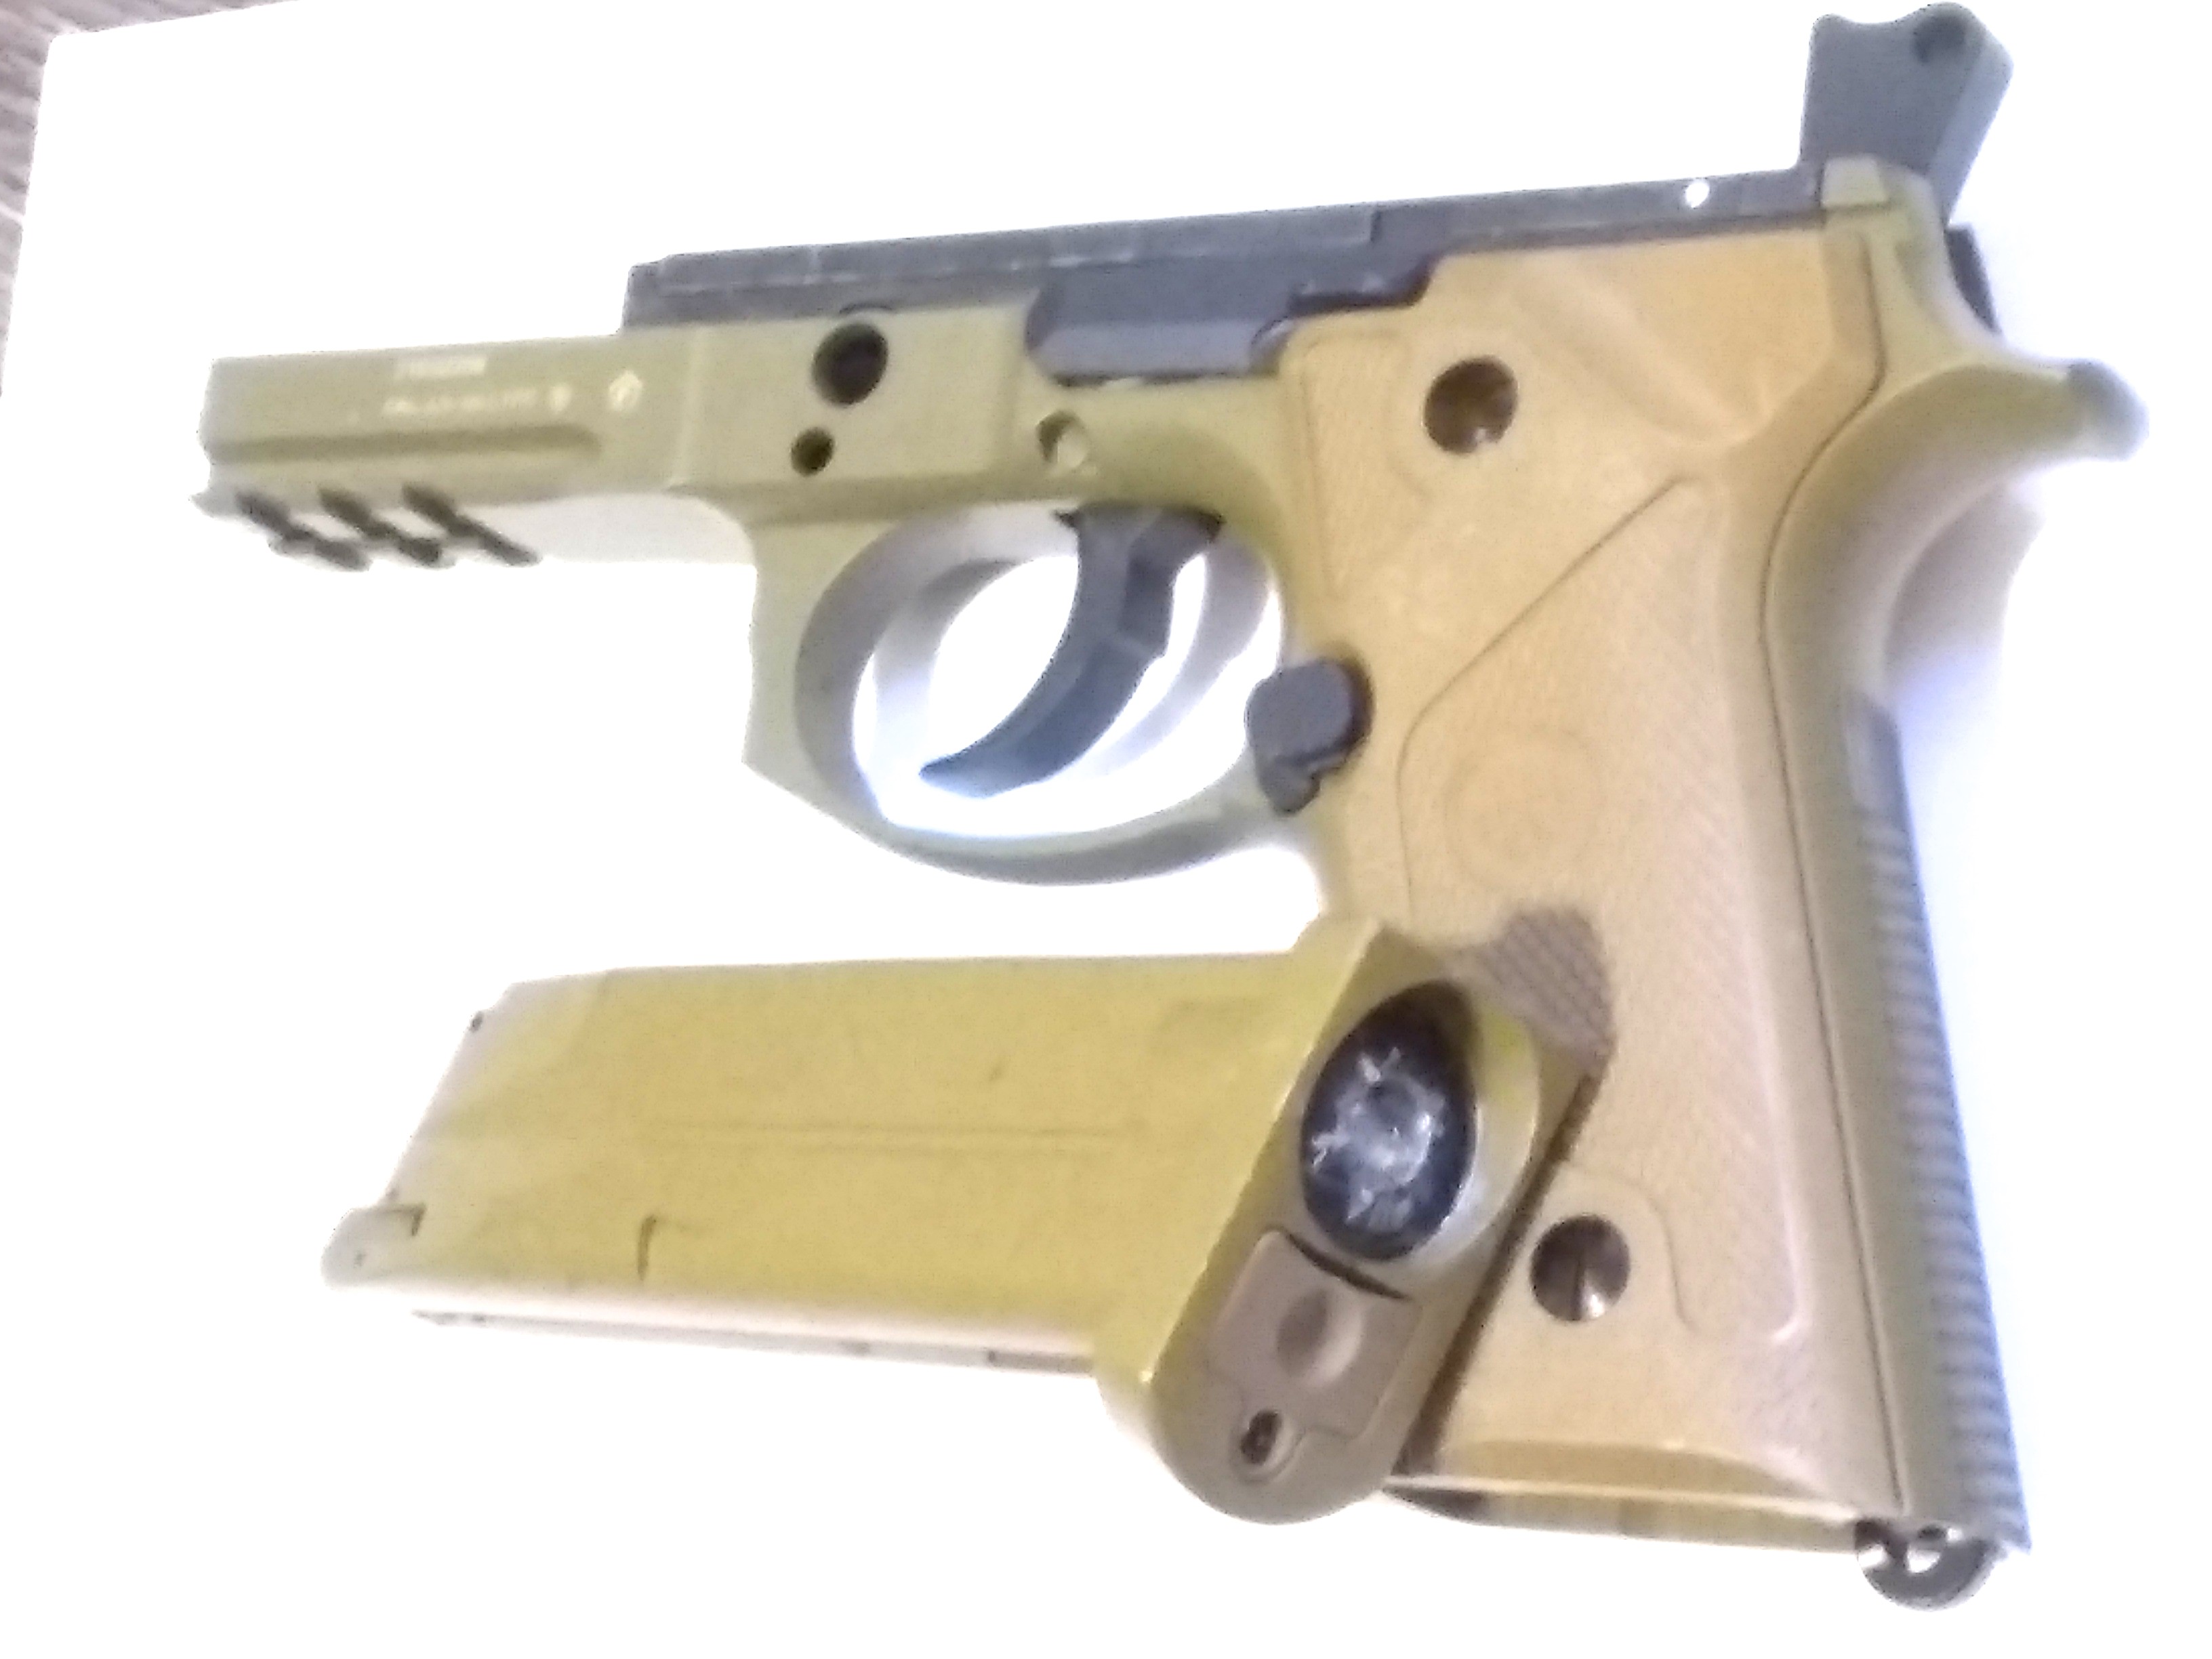 BERETTA M9A3 FULL AUTO 4.5mm bb pistol